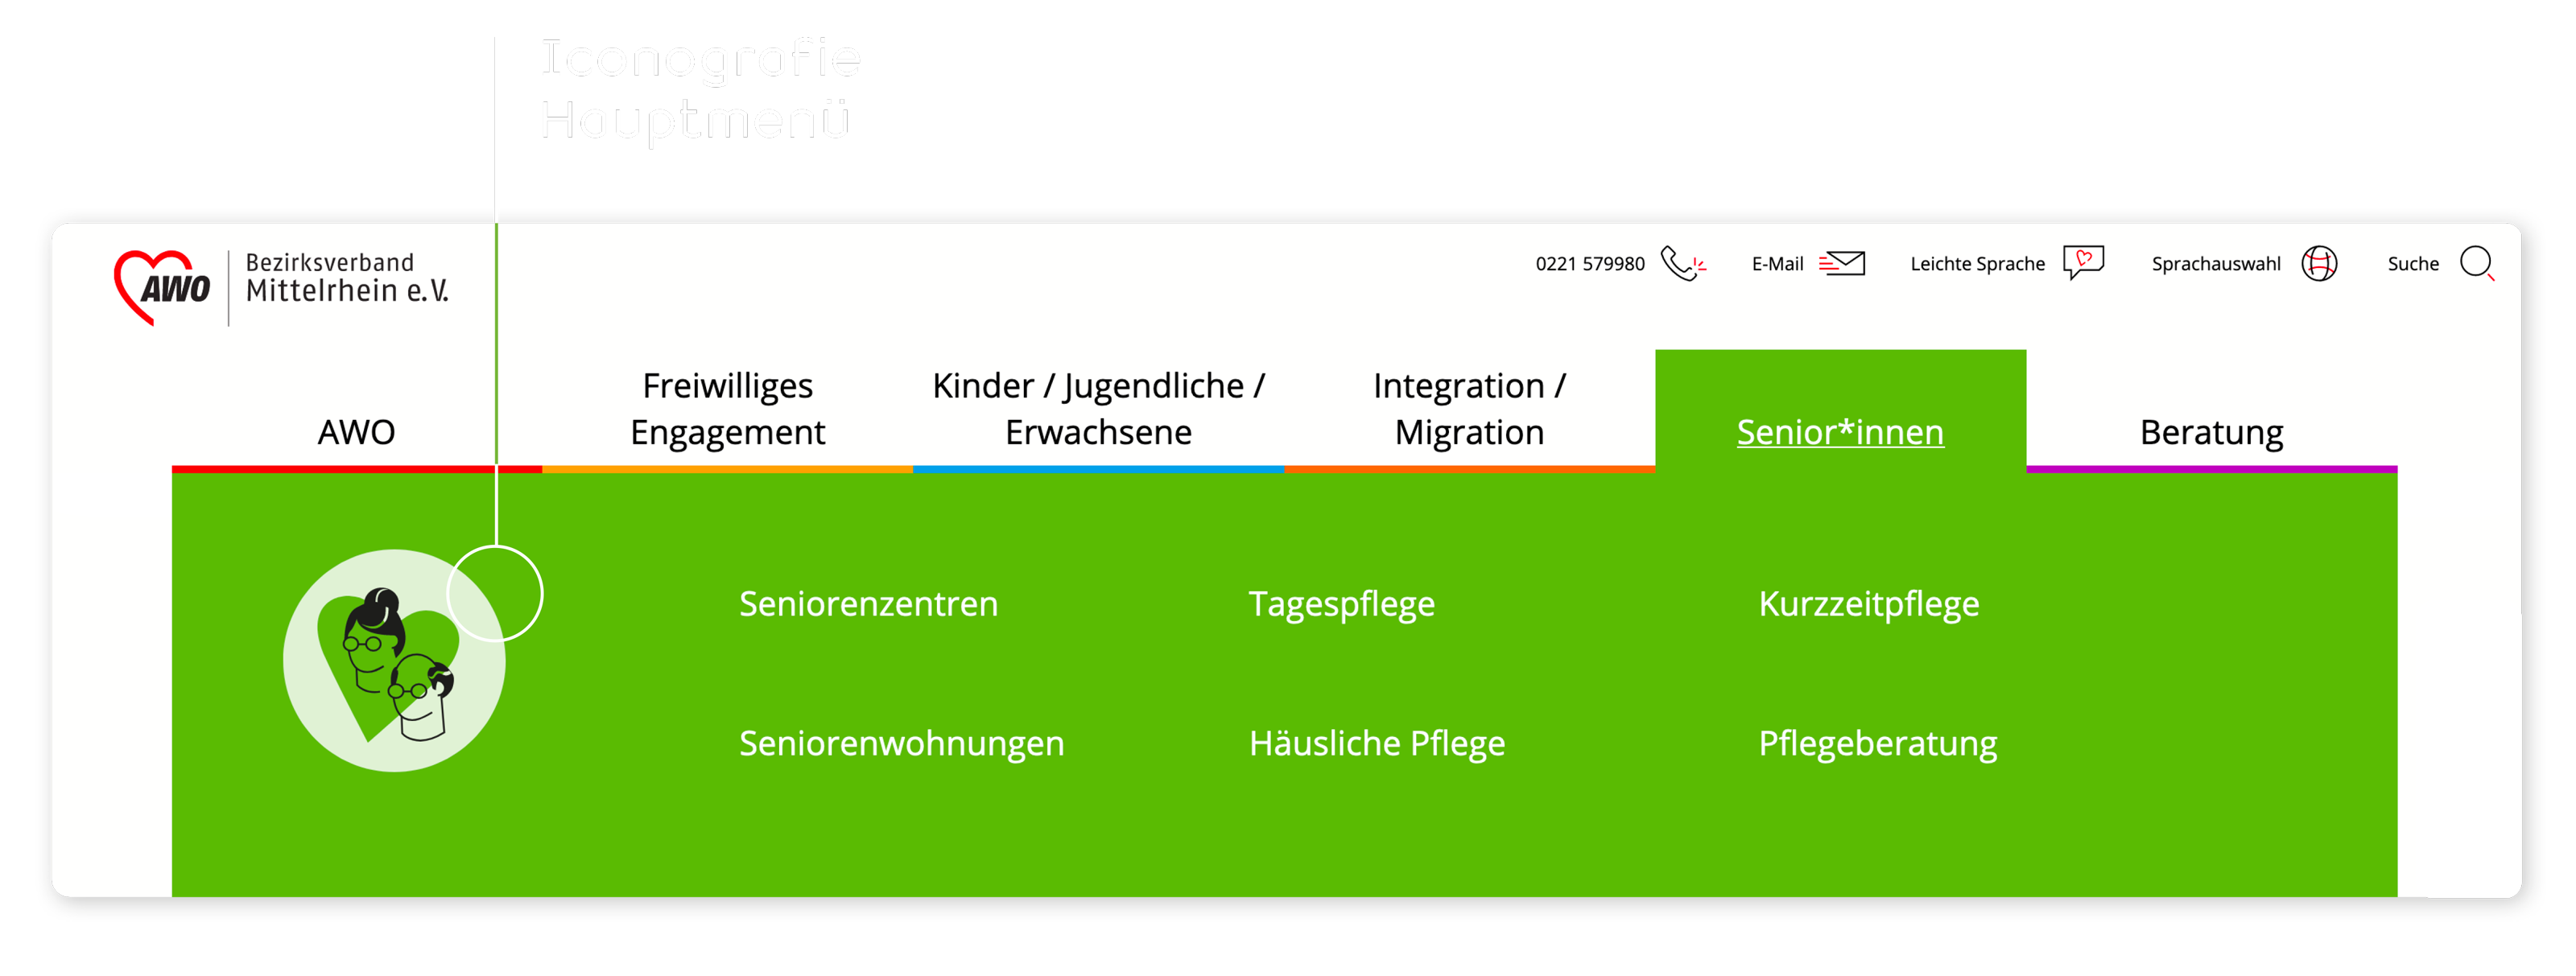 Interface Design hohe Nutzerfreundlichkeit – AWO Bezirksverband Mittelrhein – Corporate Website – Interface Design – Menü – Ikonografie